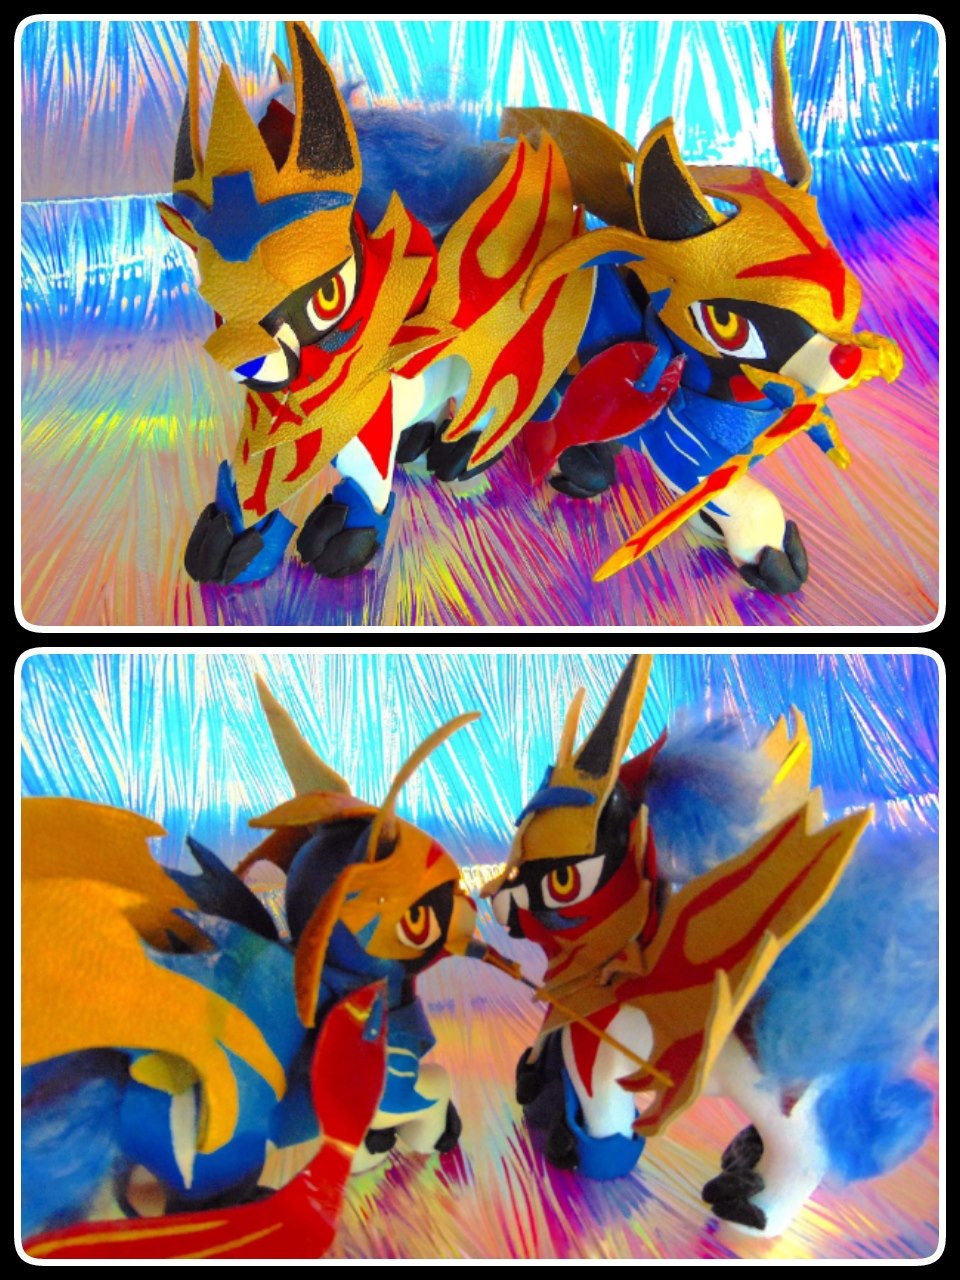 A fierce fight between two legendary pokemon, zacian and zamazenta